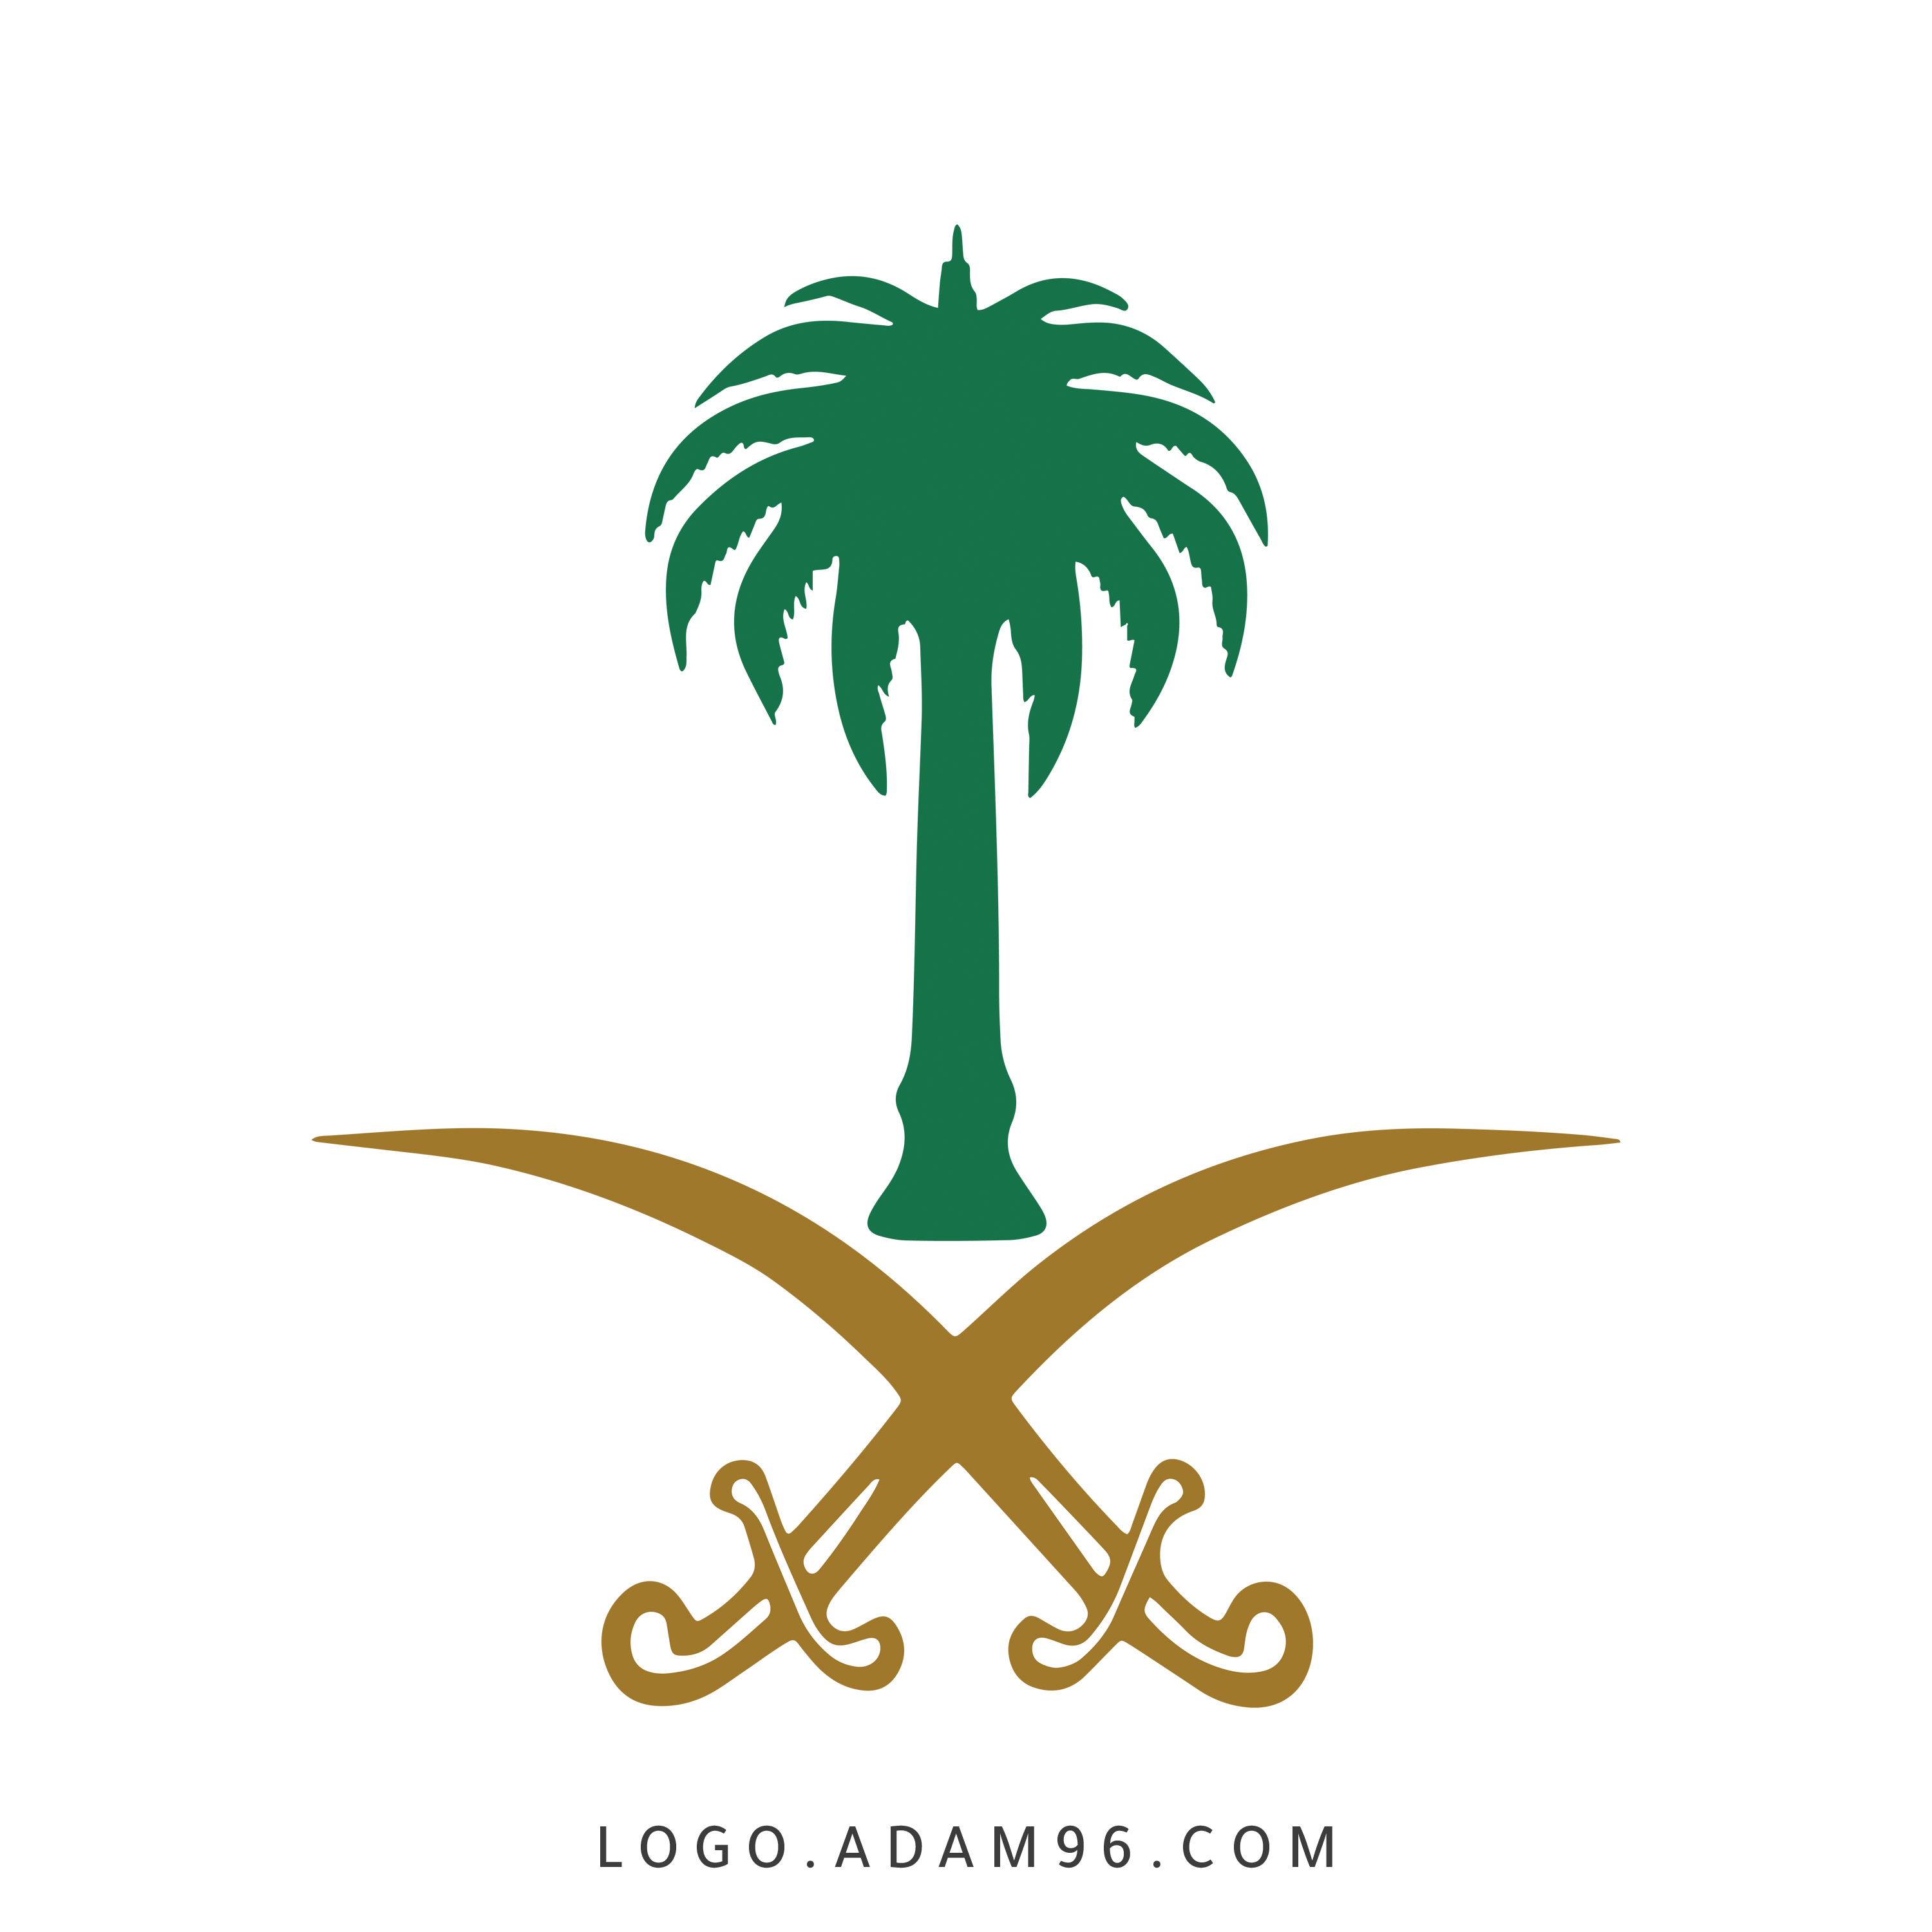 شعار السعودية